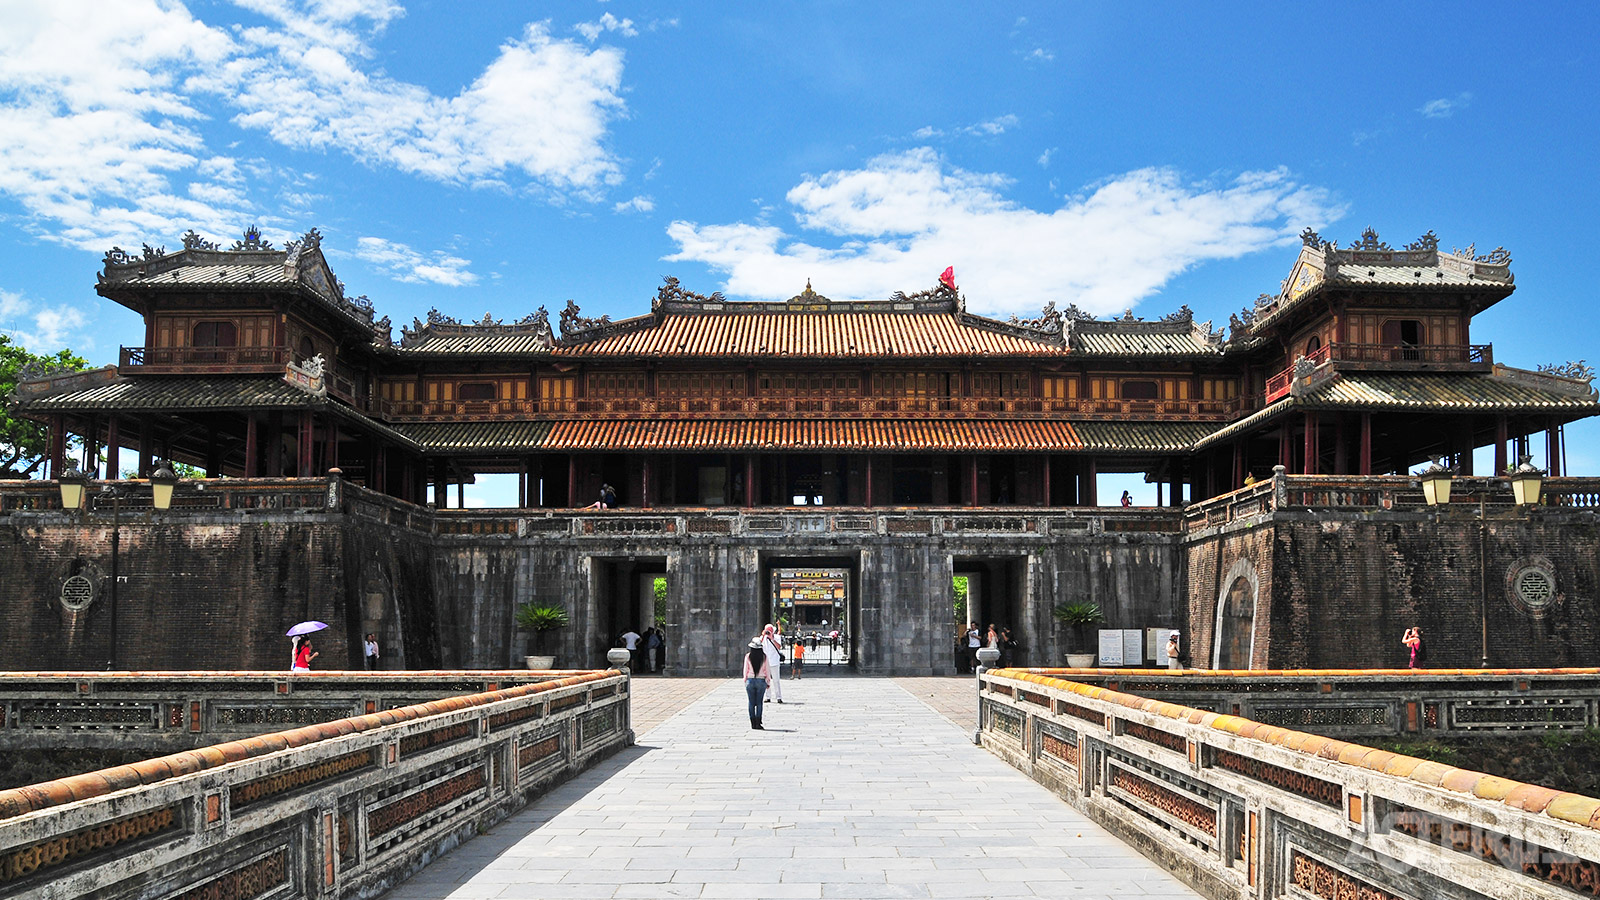 De citadel van Hue is een uitgestrekt complex van paleizen, tempels en musea